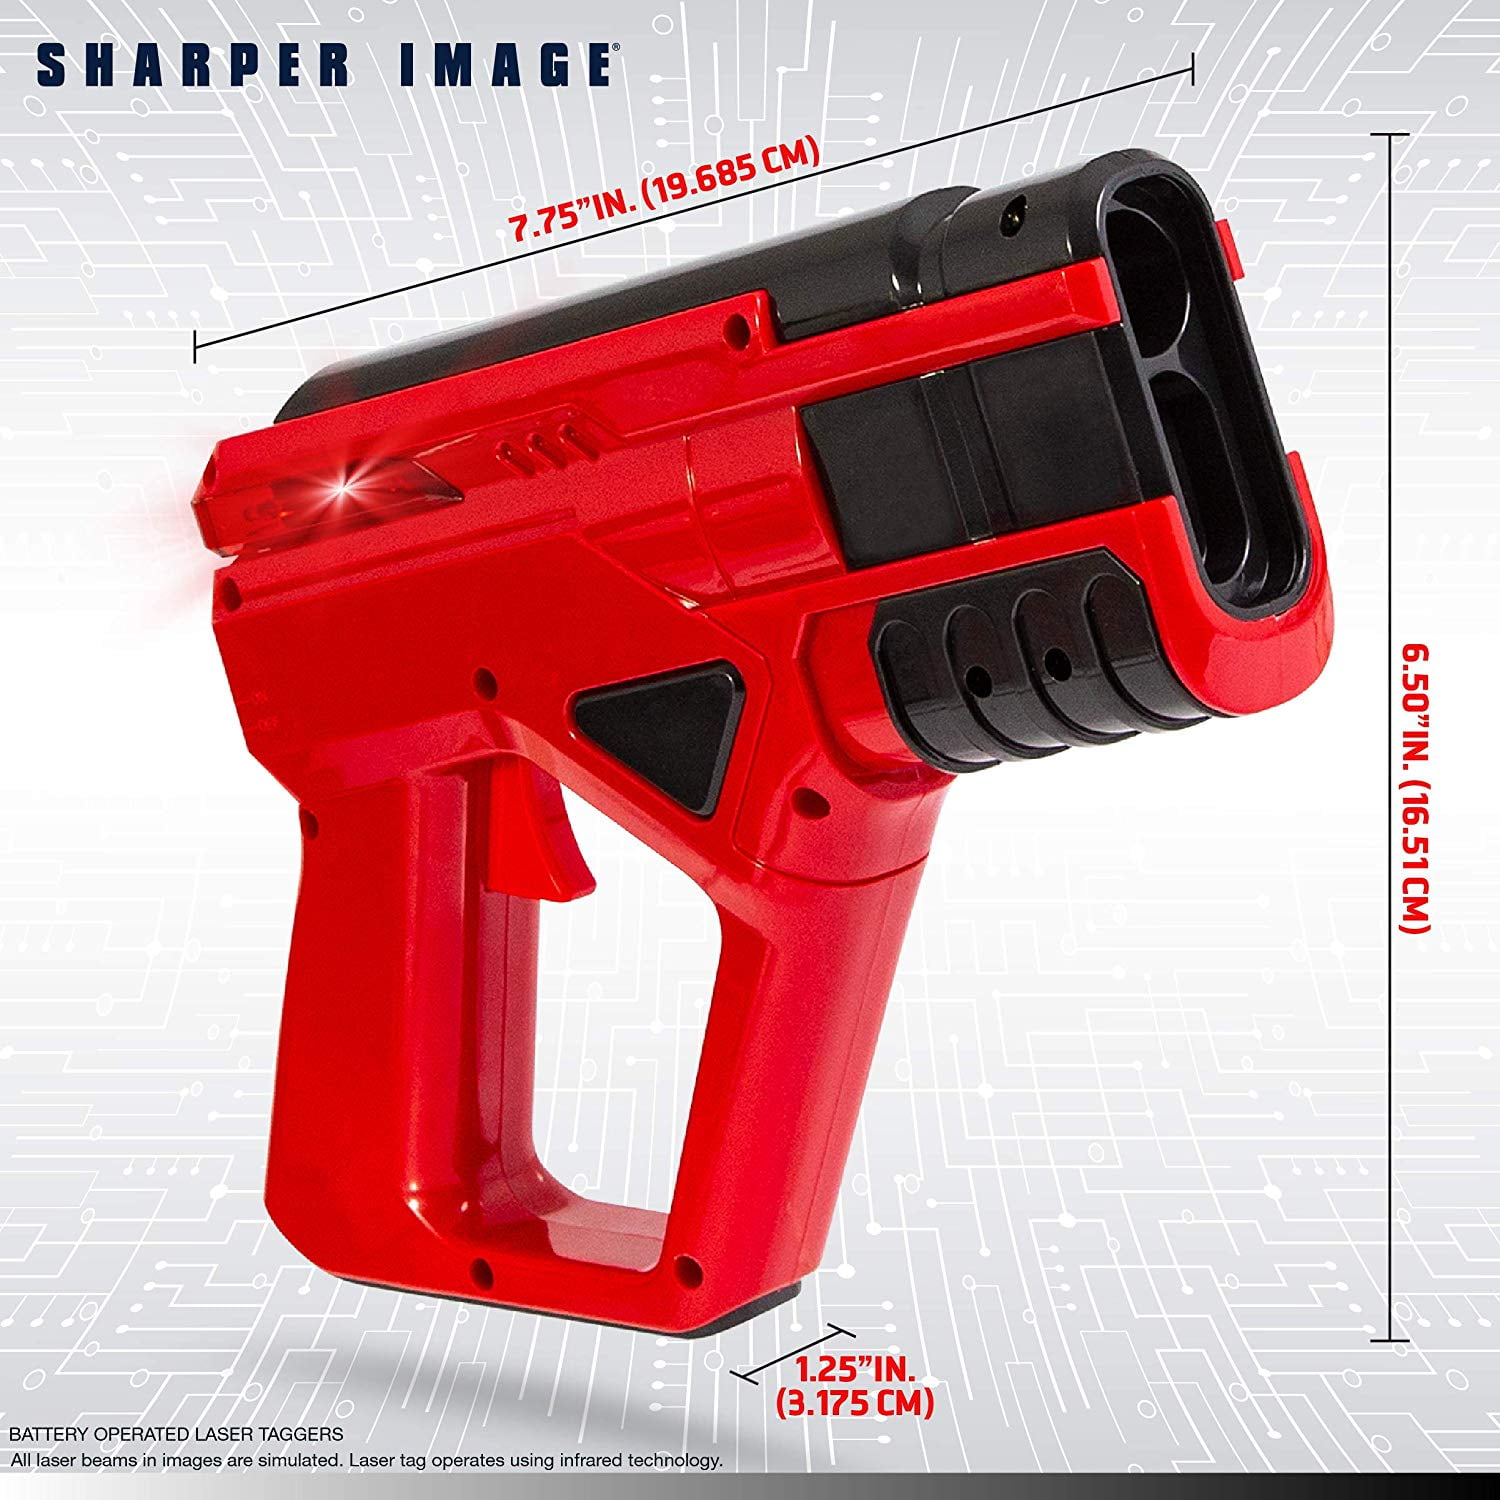 sharper image toy laser tag